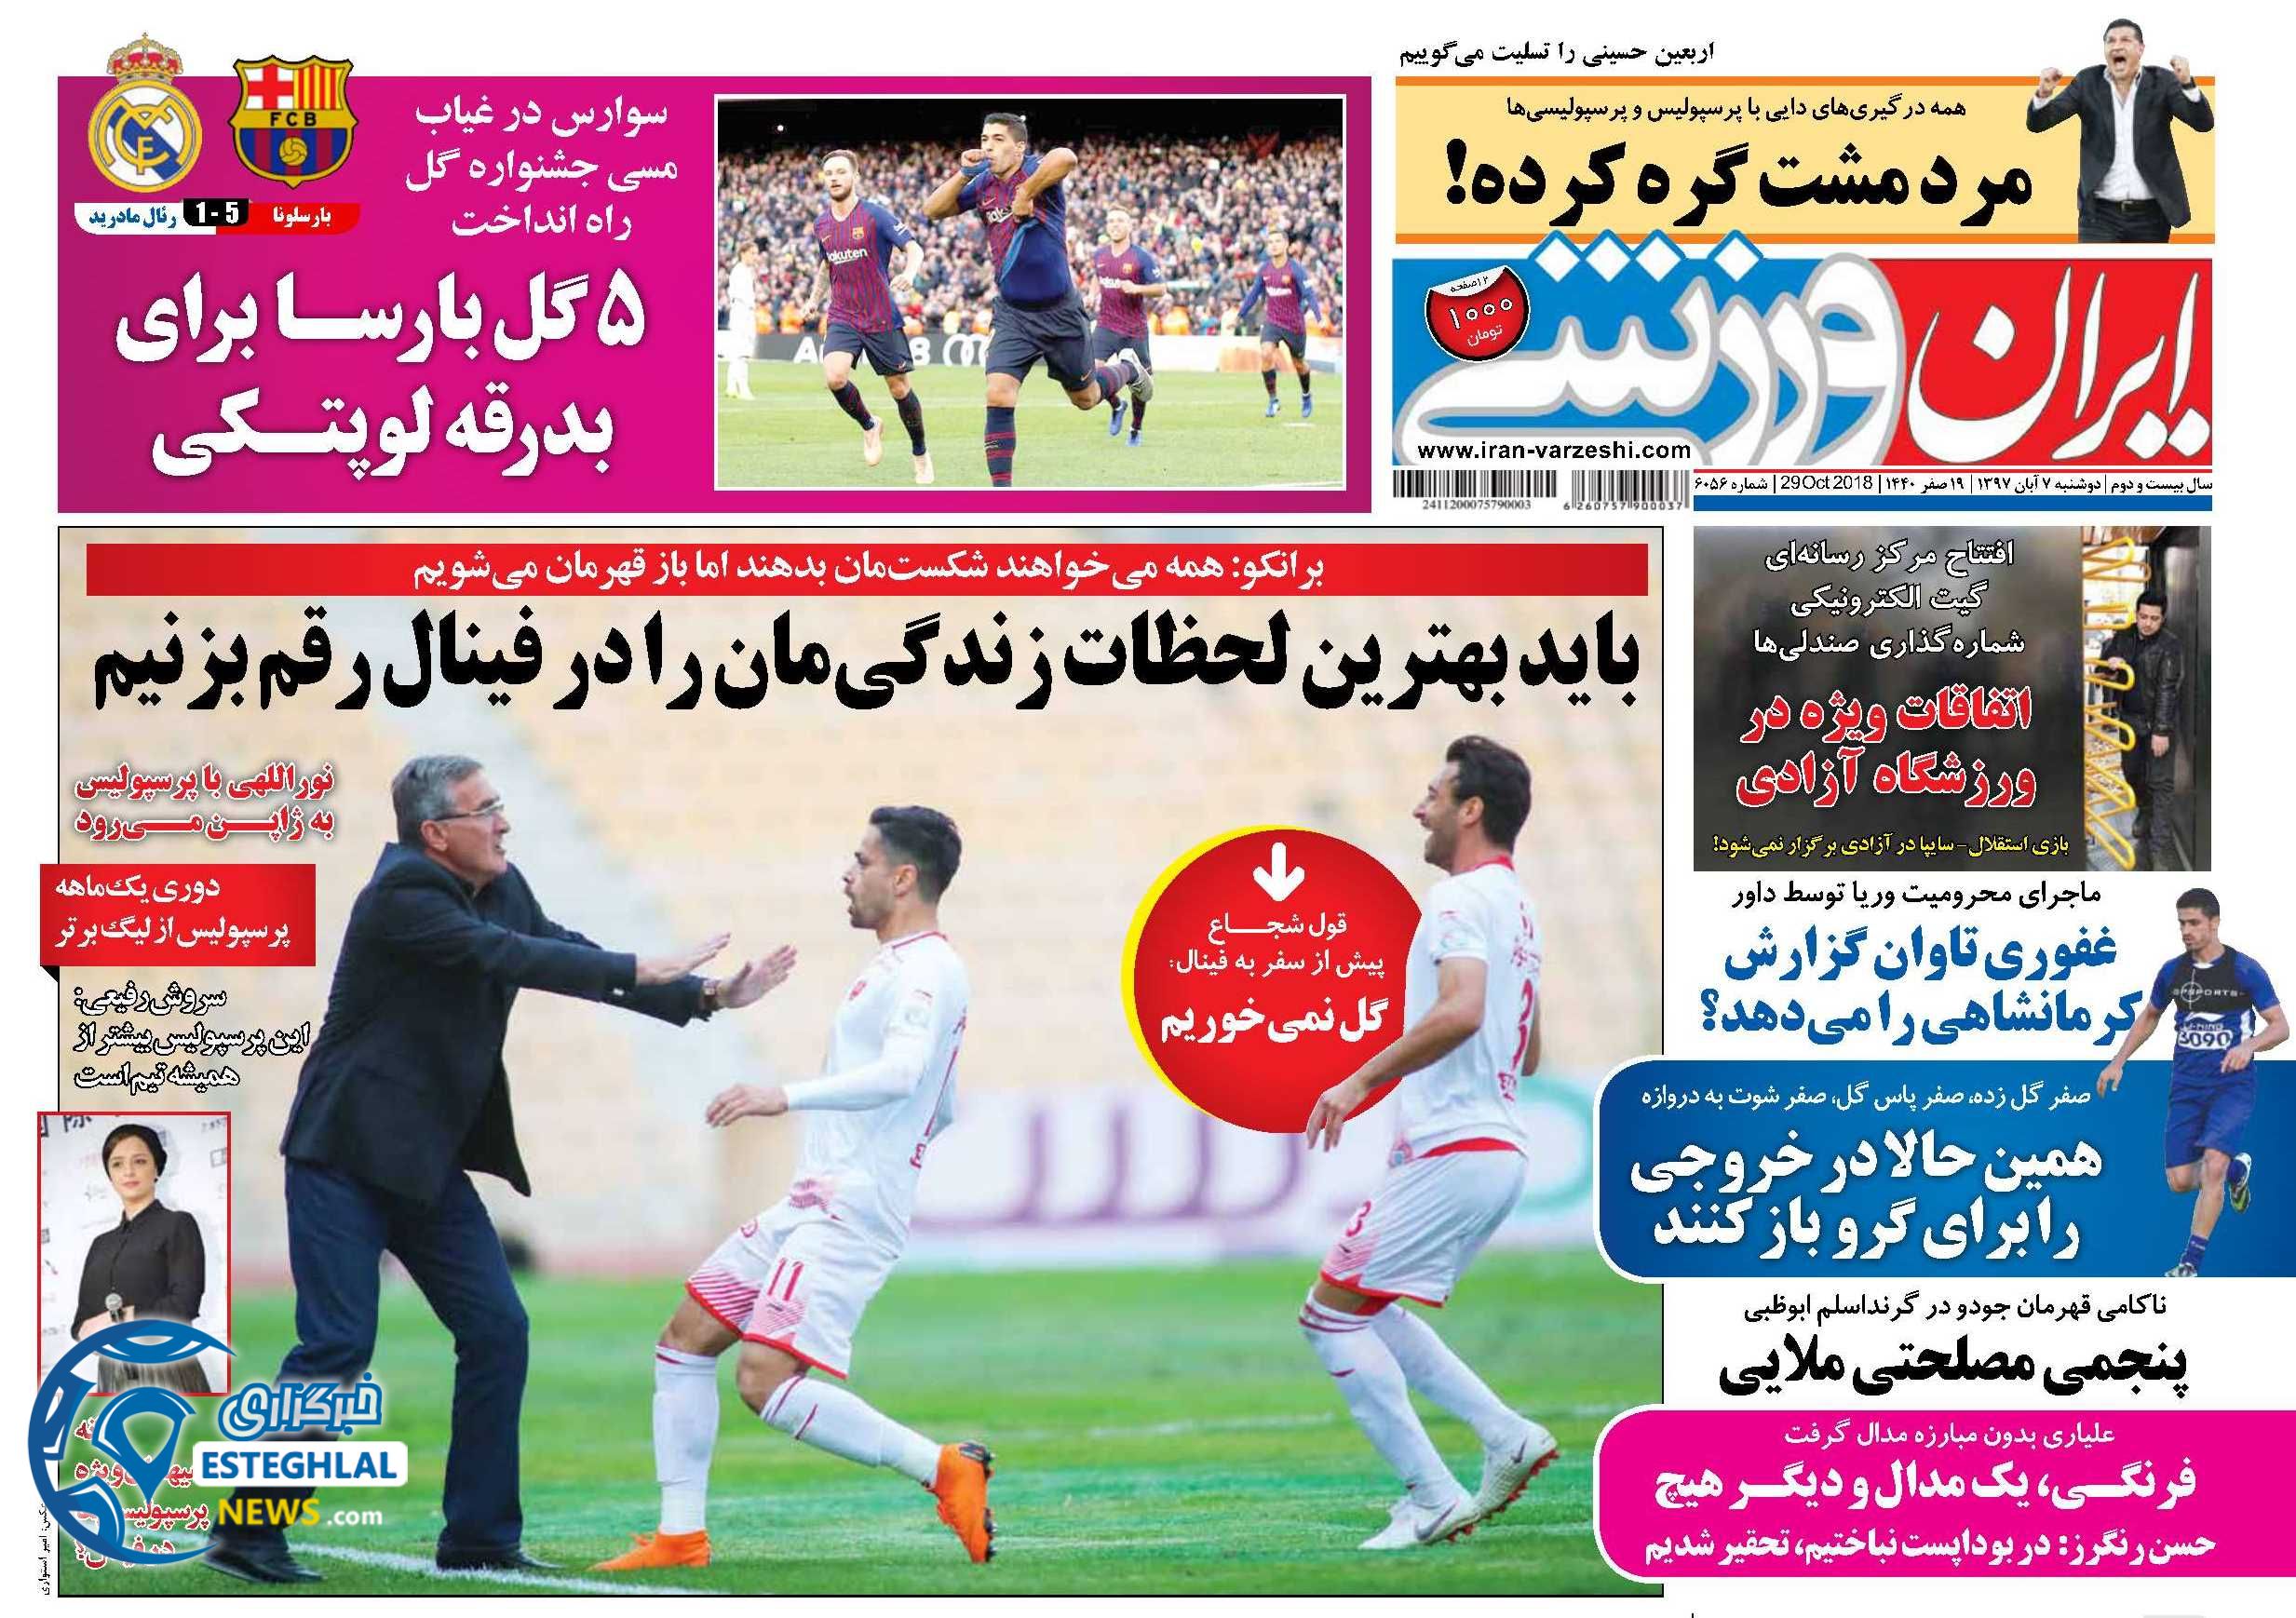 روزنامه ایران ورزشی دوشنبه 7 آبان 1397